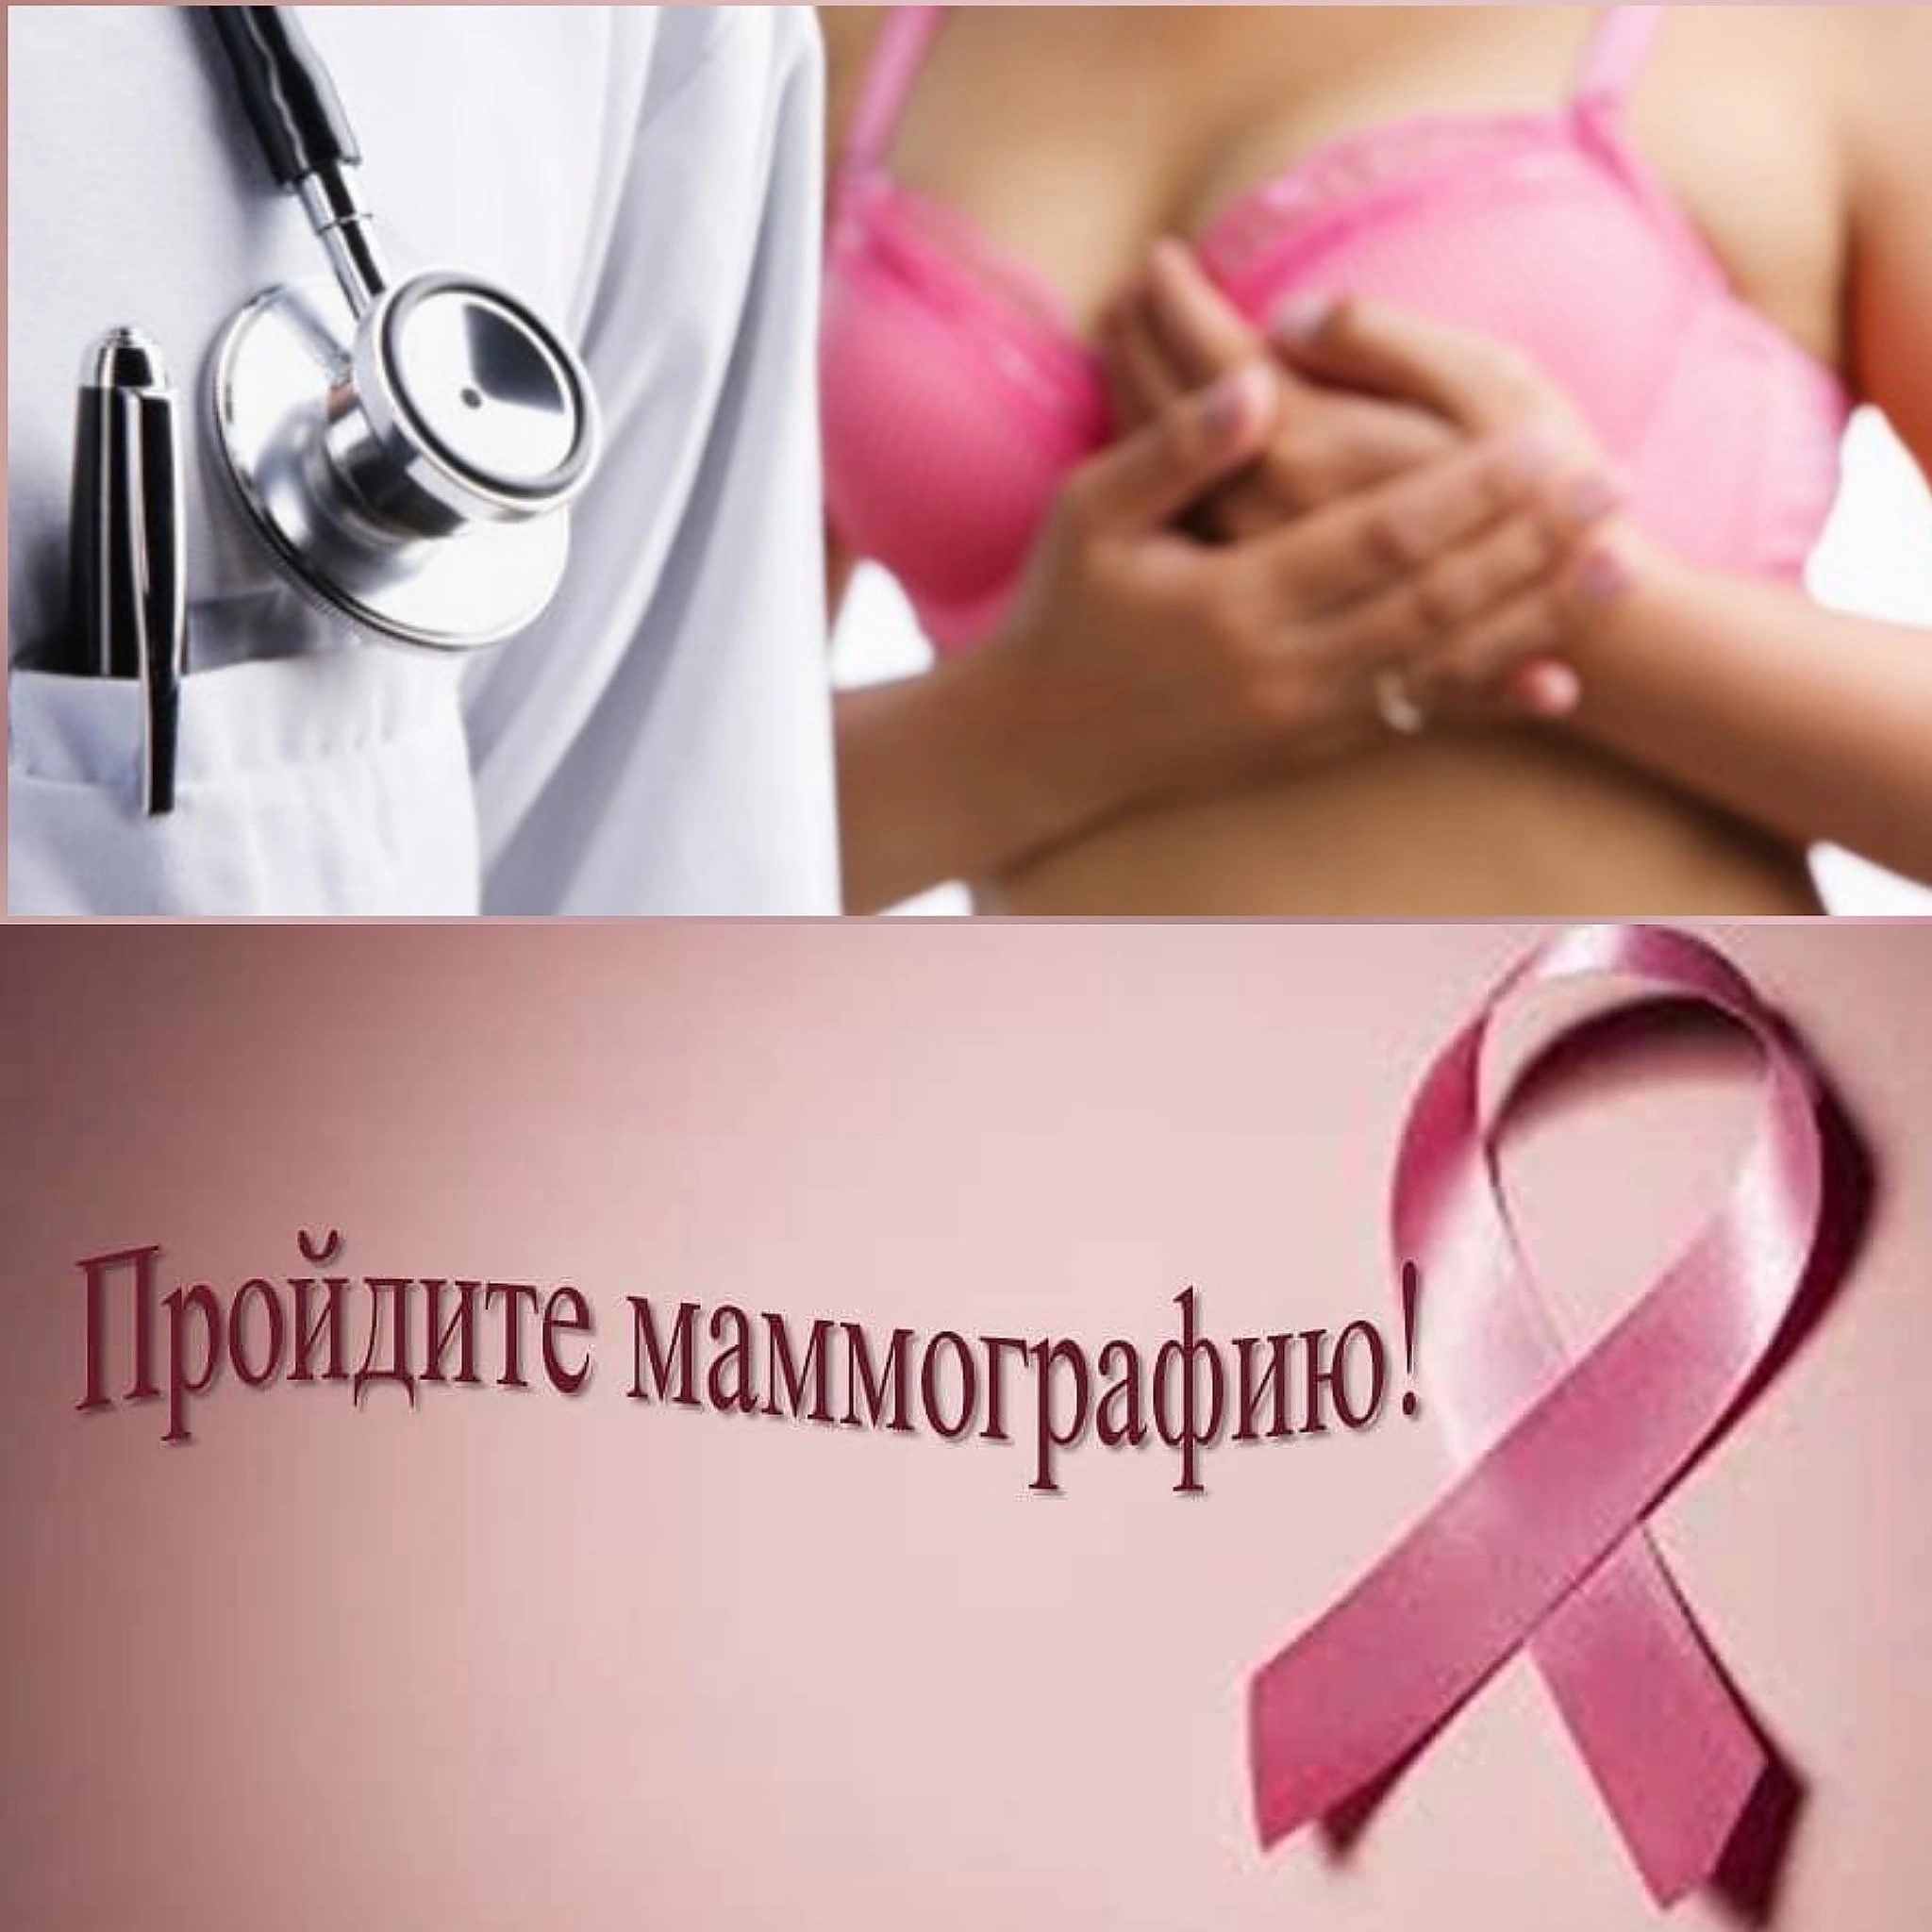 Приглашаем Вас в Коломенский перинатальный центр для прохождения маммографии БЕСПЛАТНО ПО ПРЕДВАРИТЕЛЬНОЙ ЗАПИСИ